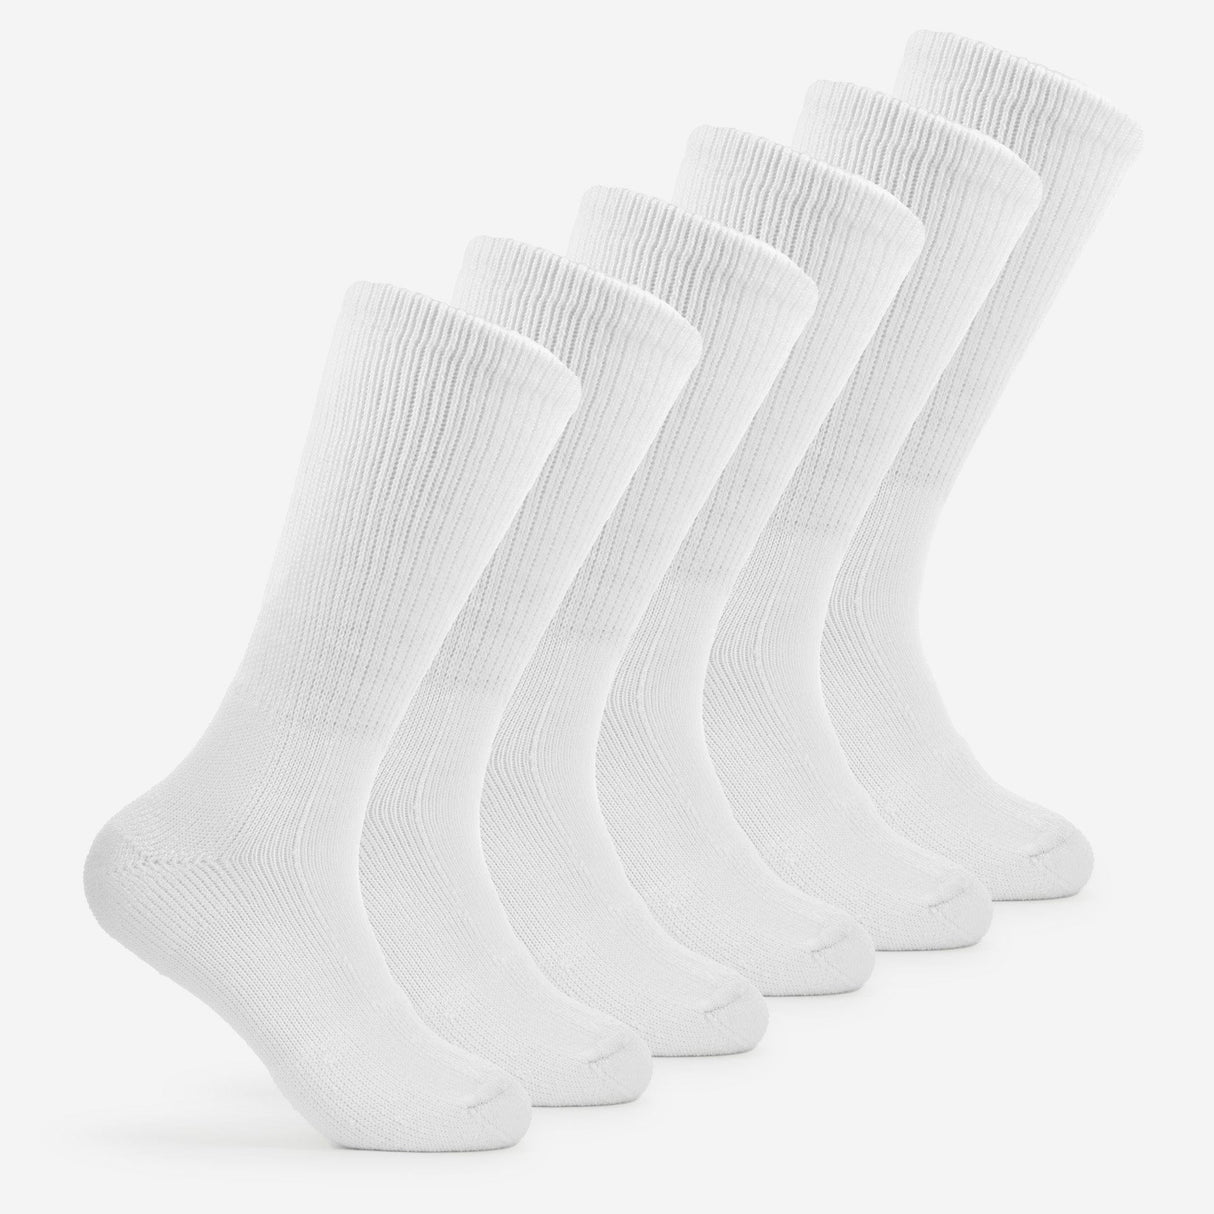 Thorlo Walking Moderate Cushion Crew Socks  -  Medium / White / 6-Pair Pack